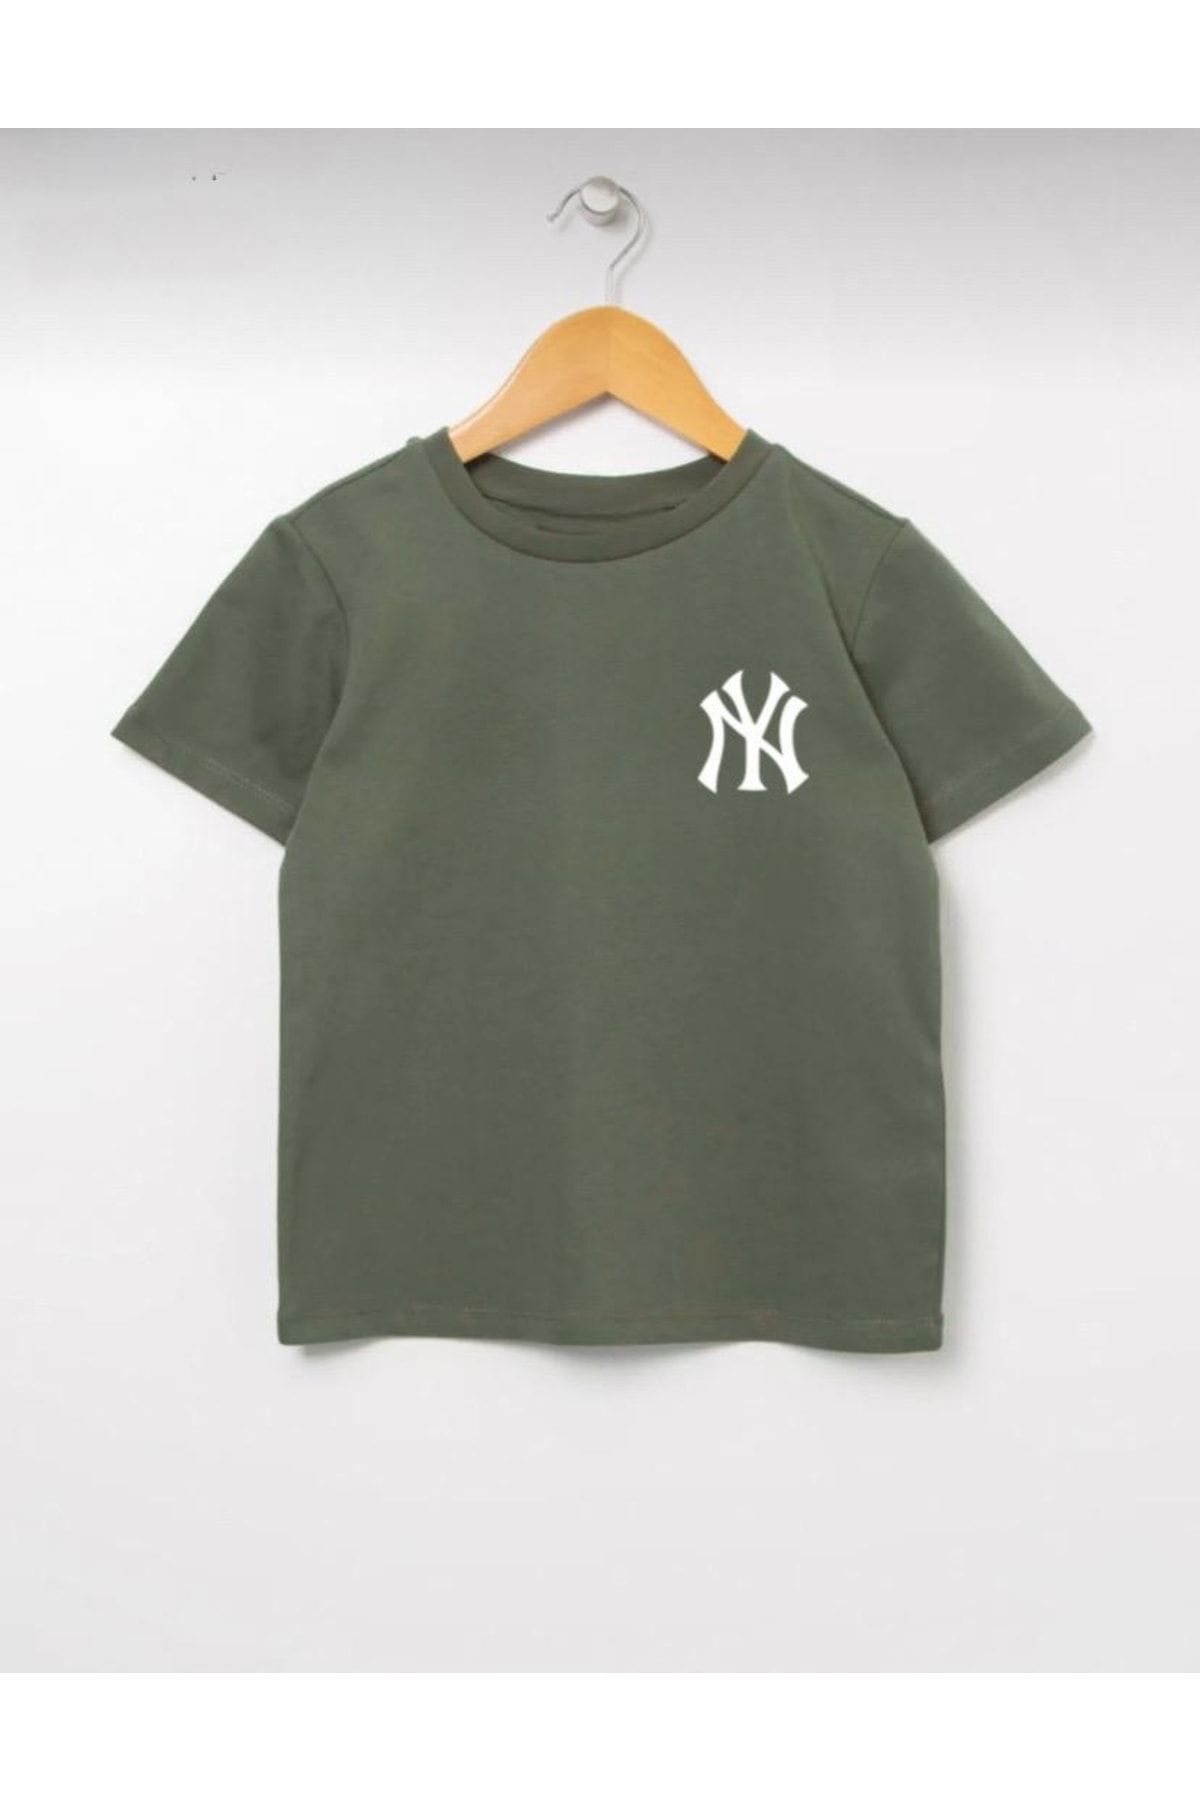 Serays moda Newyork-ny Baskılı Kız Erkek T-shirt